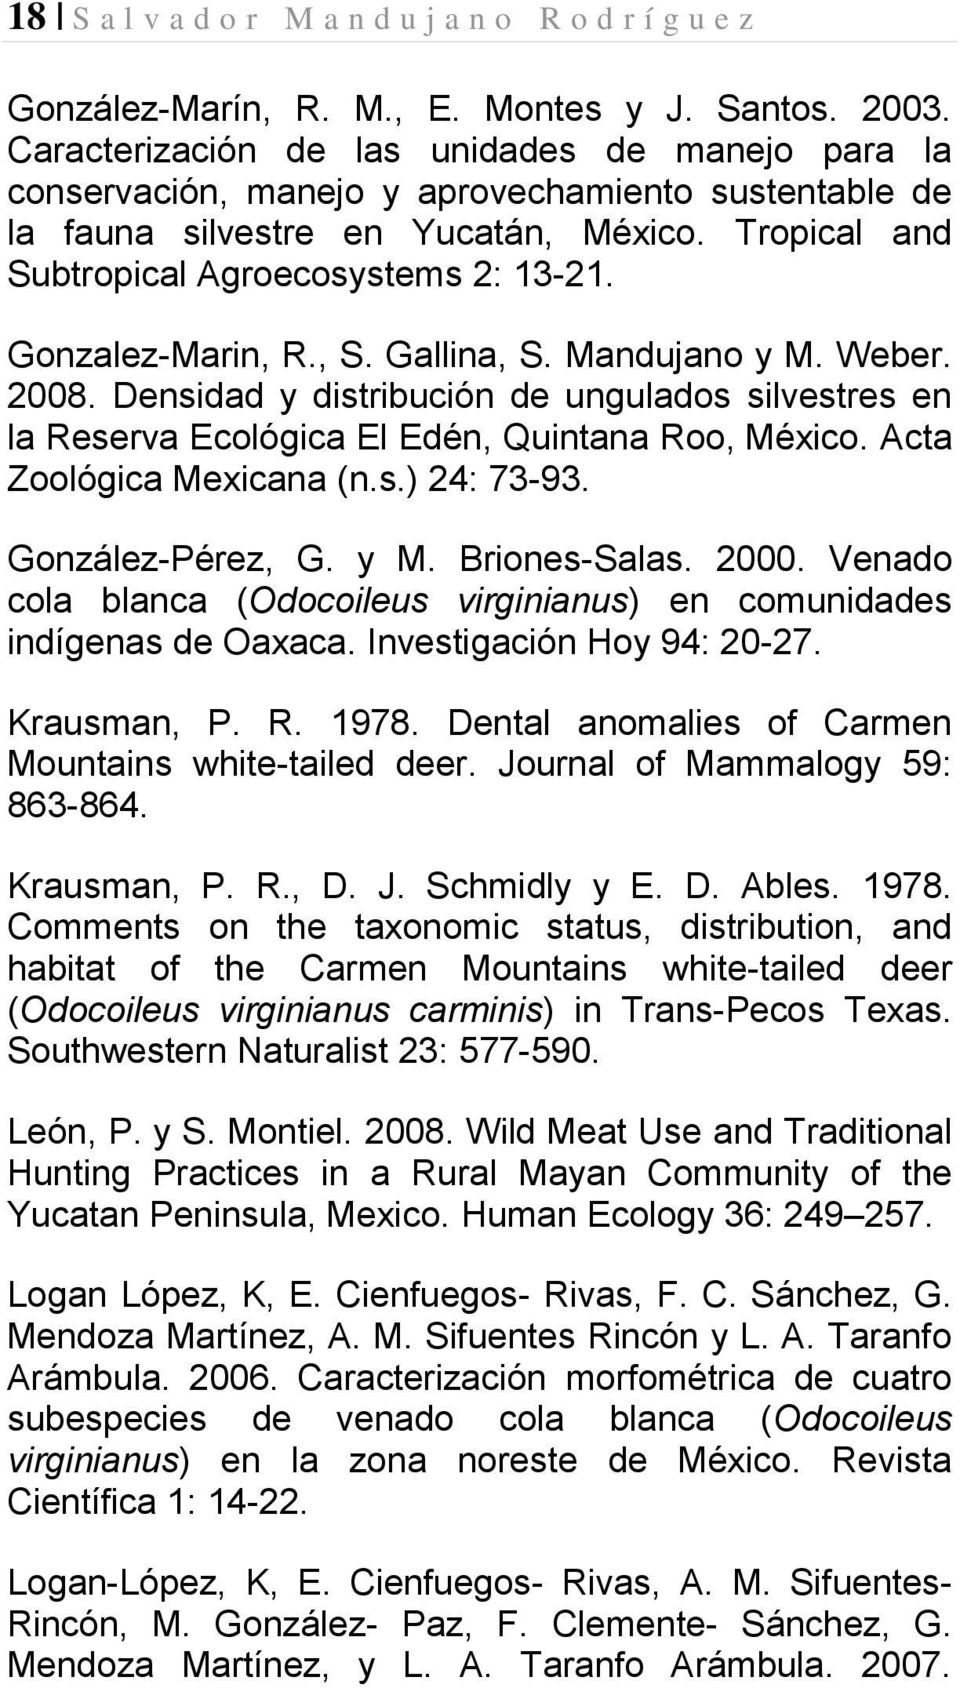 Gonzalez-Marin, R., S. Gallina, S. Mandujano y M. Weber. 2008. Densidad y distribución de ungulados silvestres en la Reserva Ecológica El Edén, Quintana Roo, México. Acta Zoológica Mexicana (n.s.) 24: 73-93.